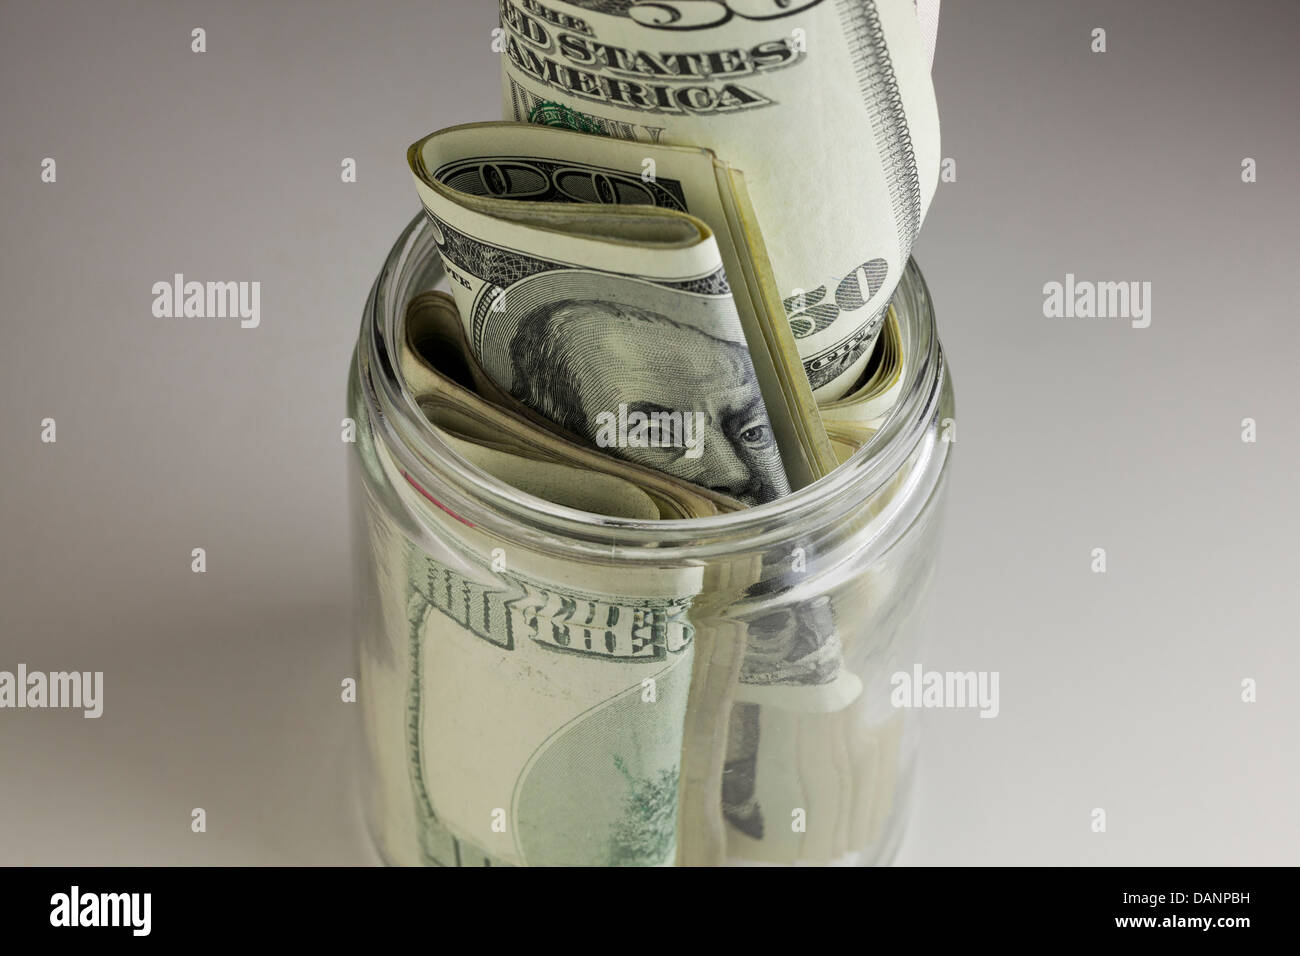 L'argent dans les petits farcis bocal en verre Banque D'Images